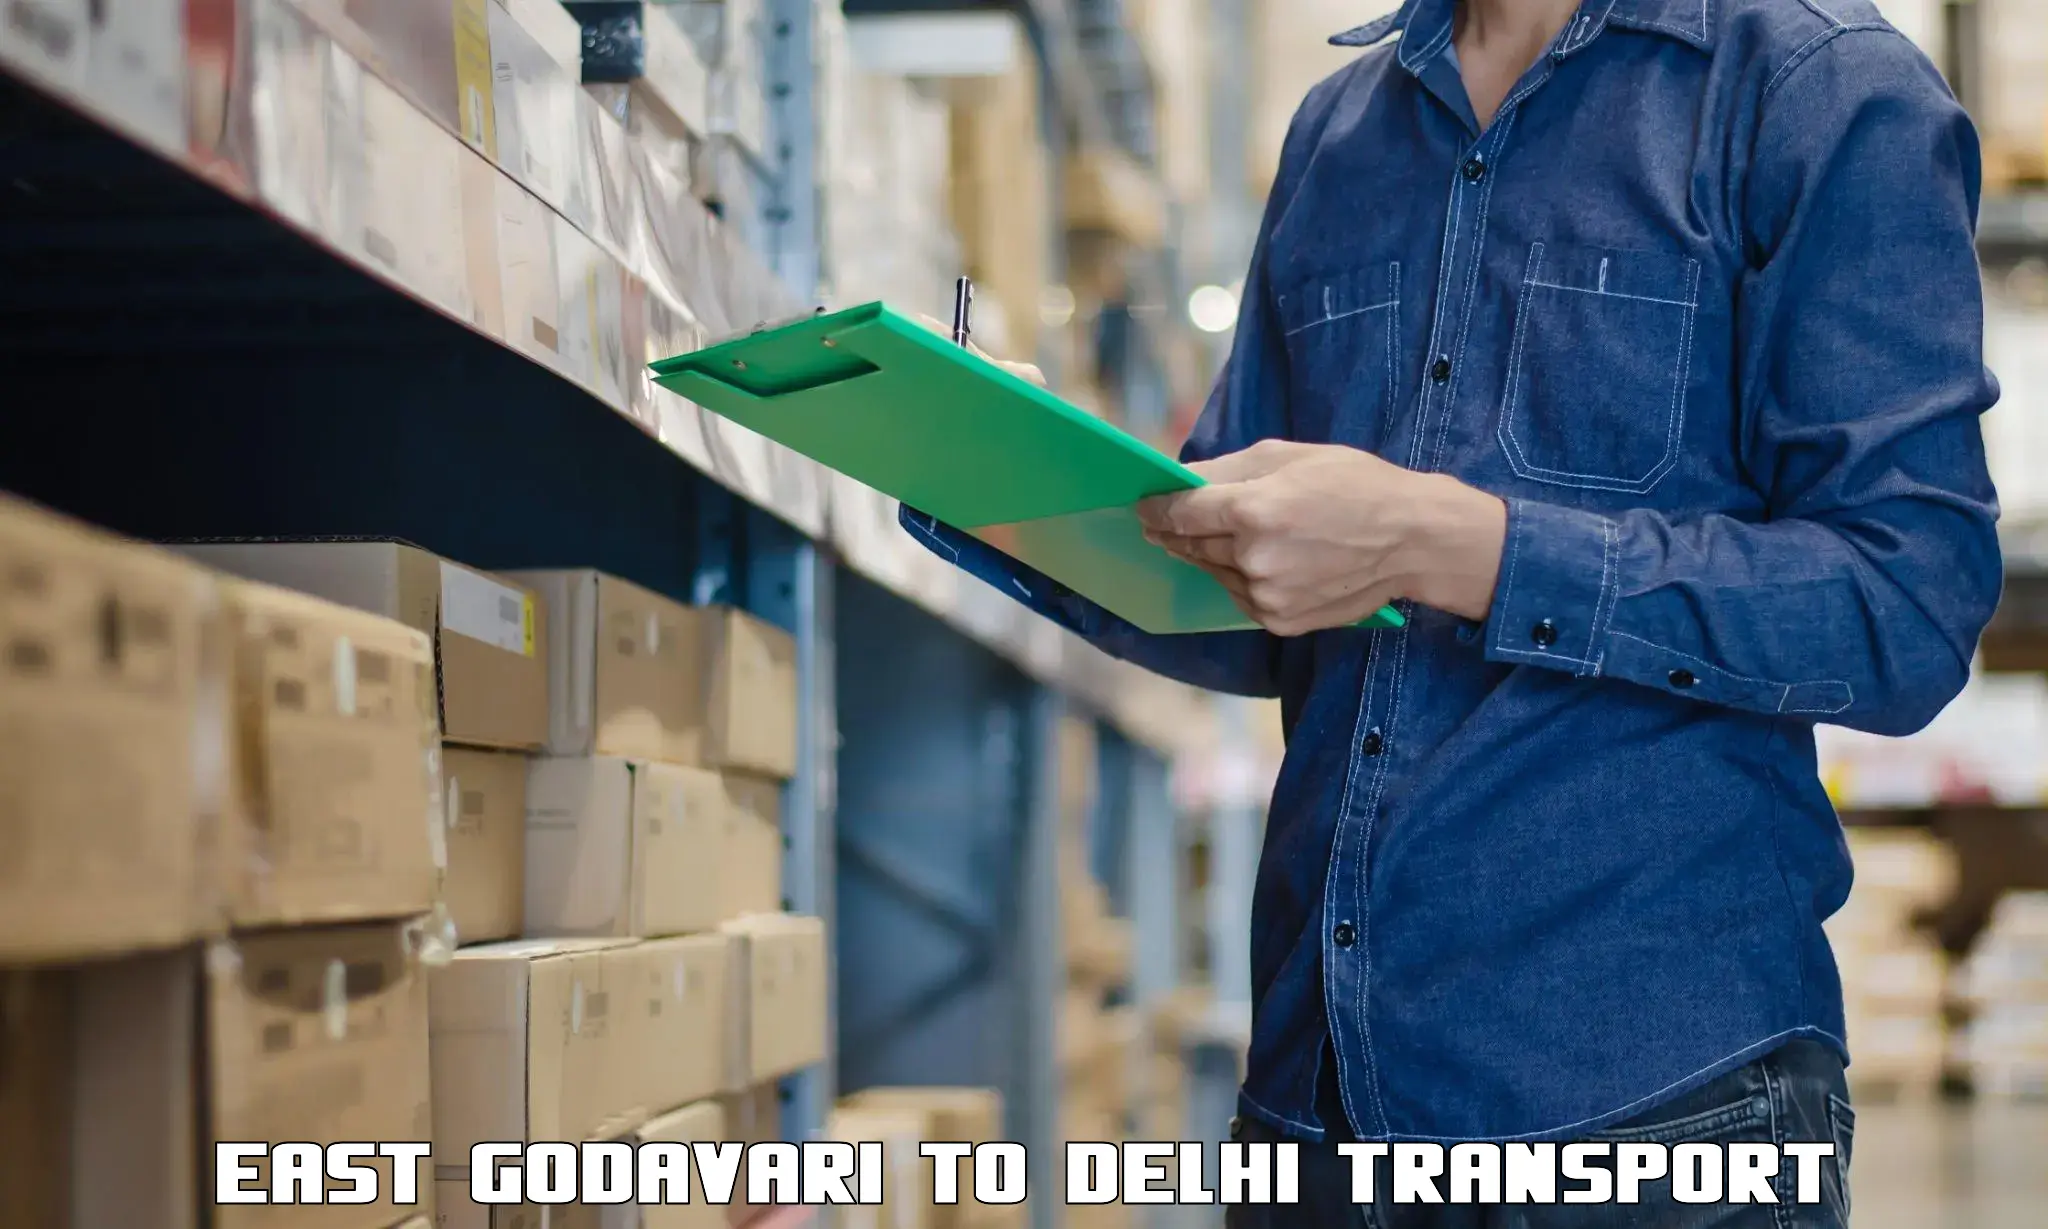 Nationwide transport services East Godavari to Delhi